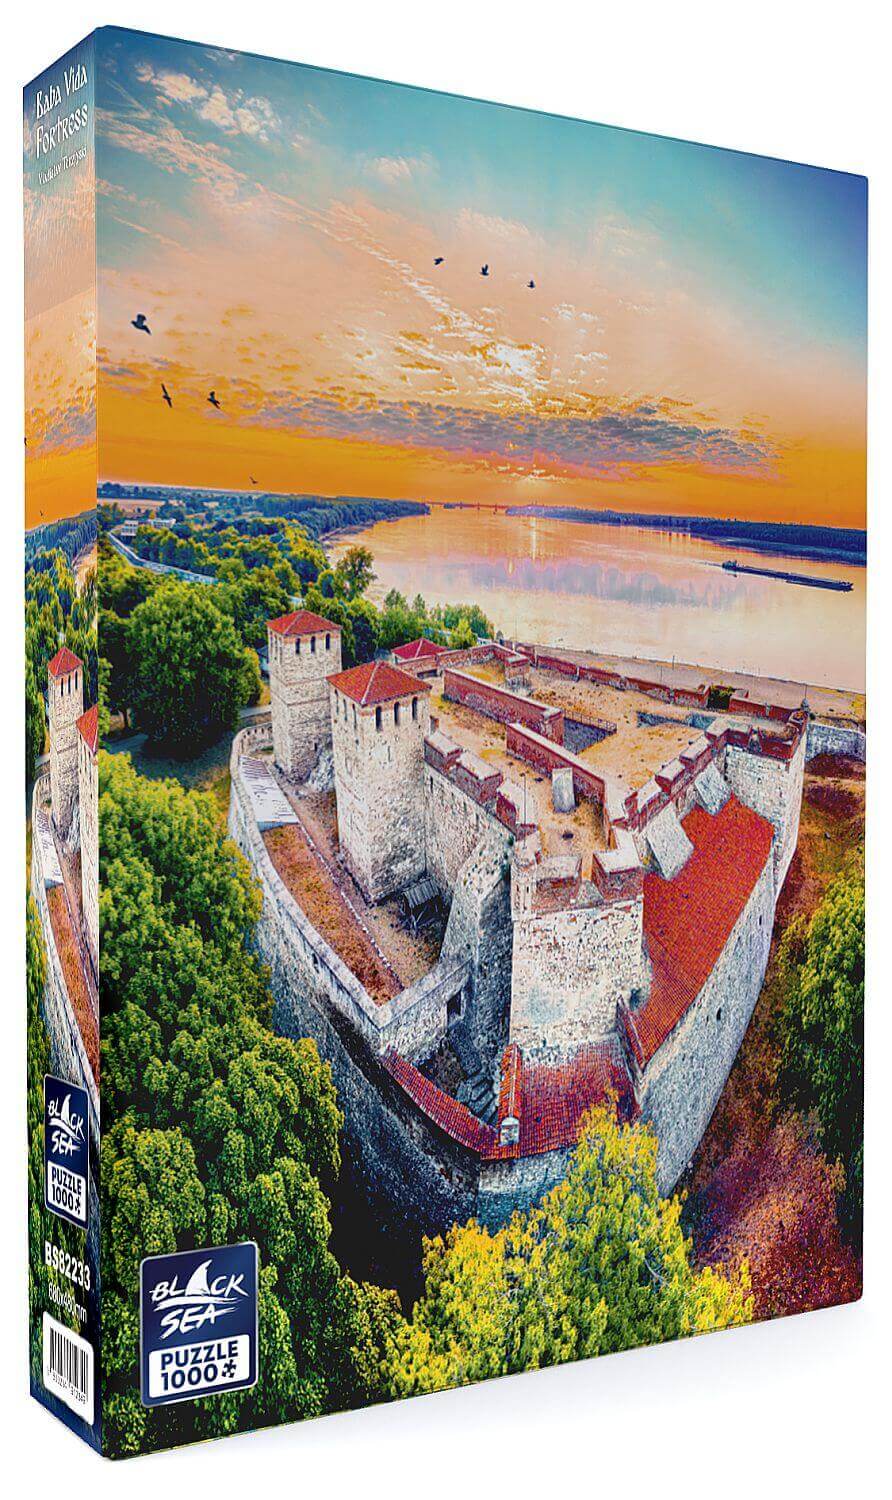 Puzzle Black Sea 1000 pieces - Baba Vida Fortress